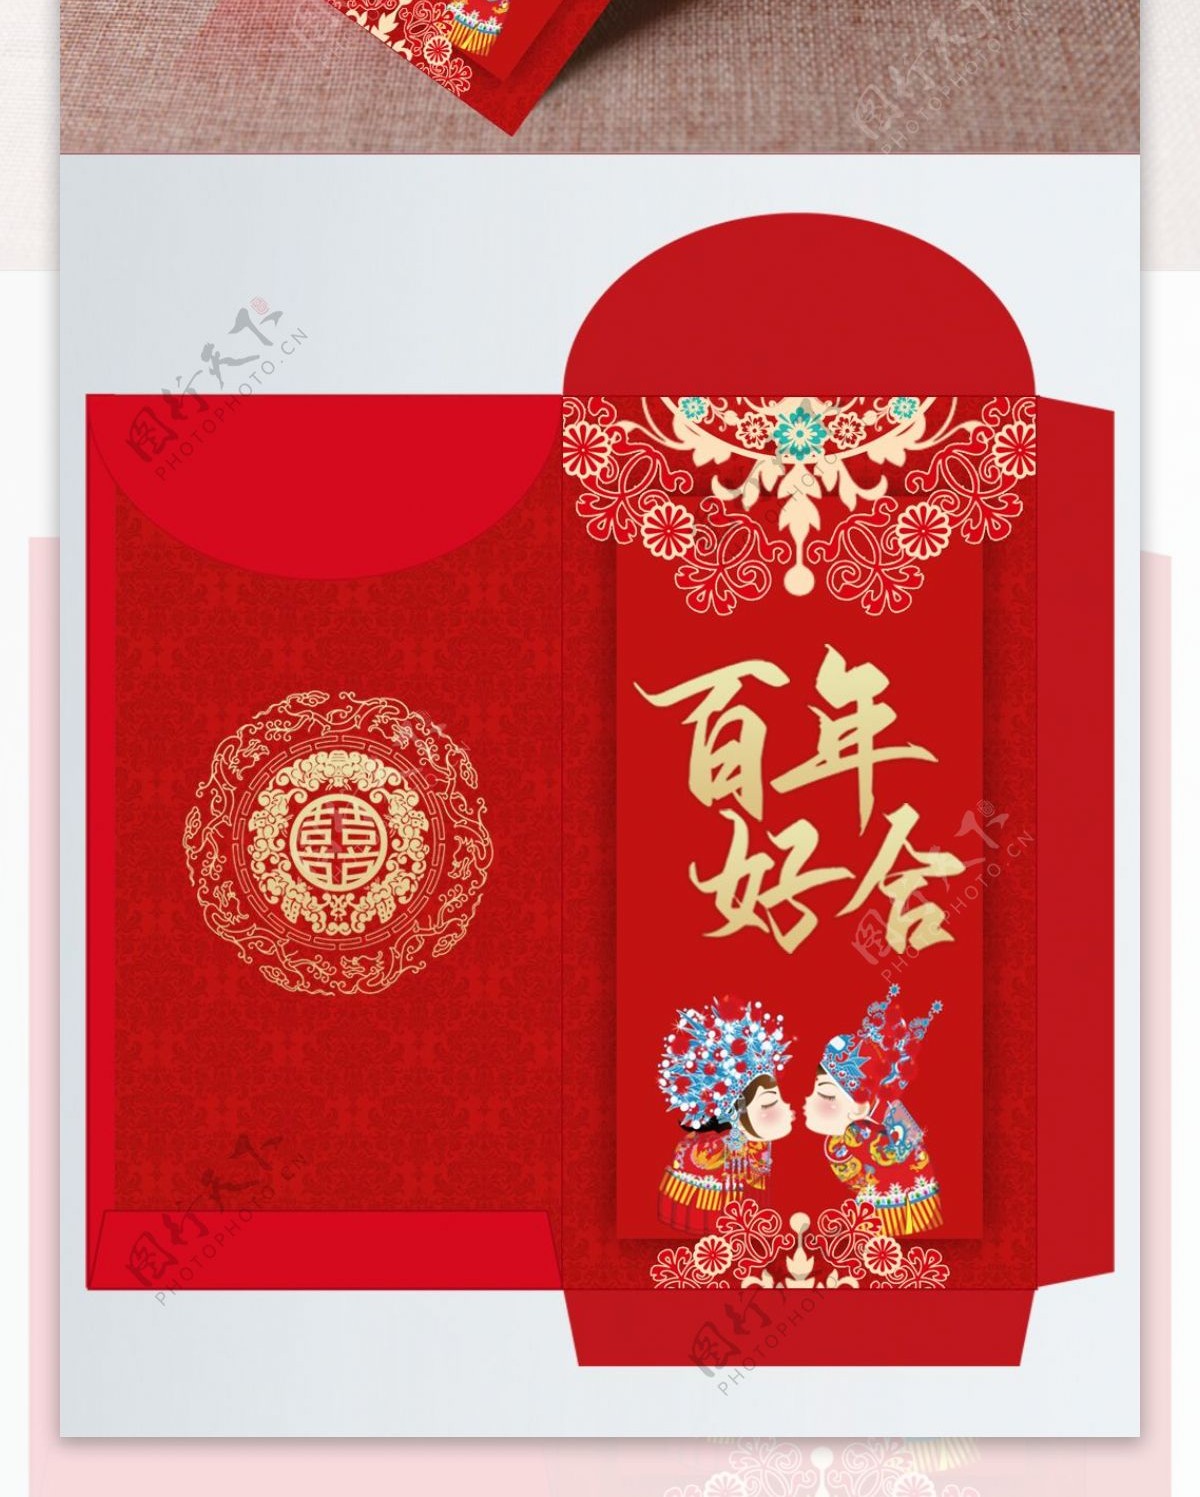 白底红包一个红包烫金字体大吉大利立体中国结图片免费下载 - 觅知网